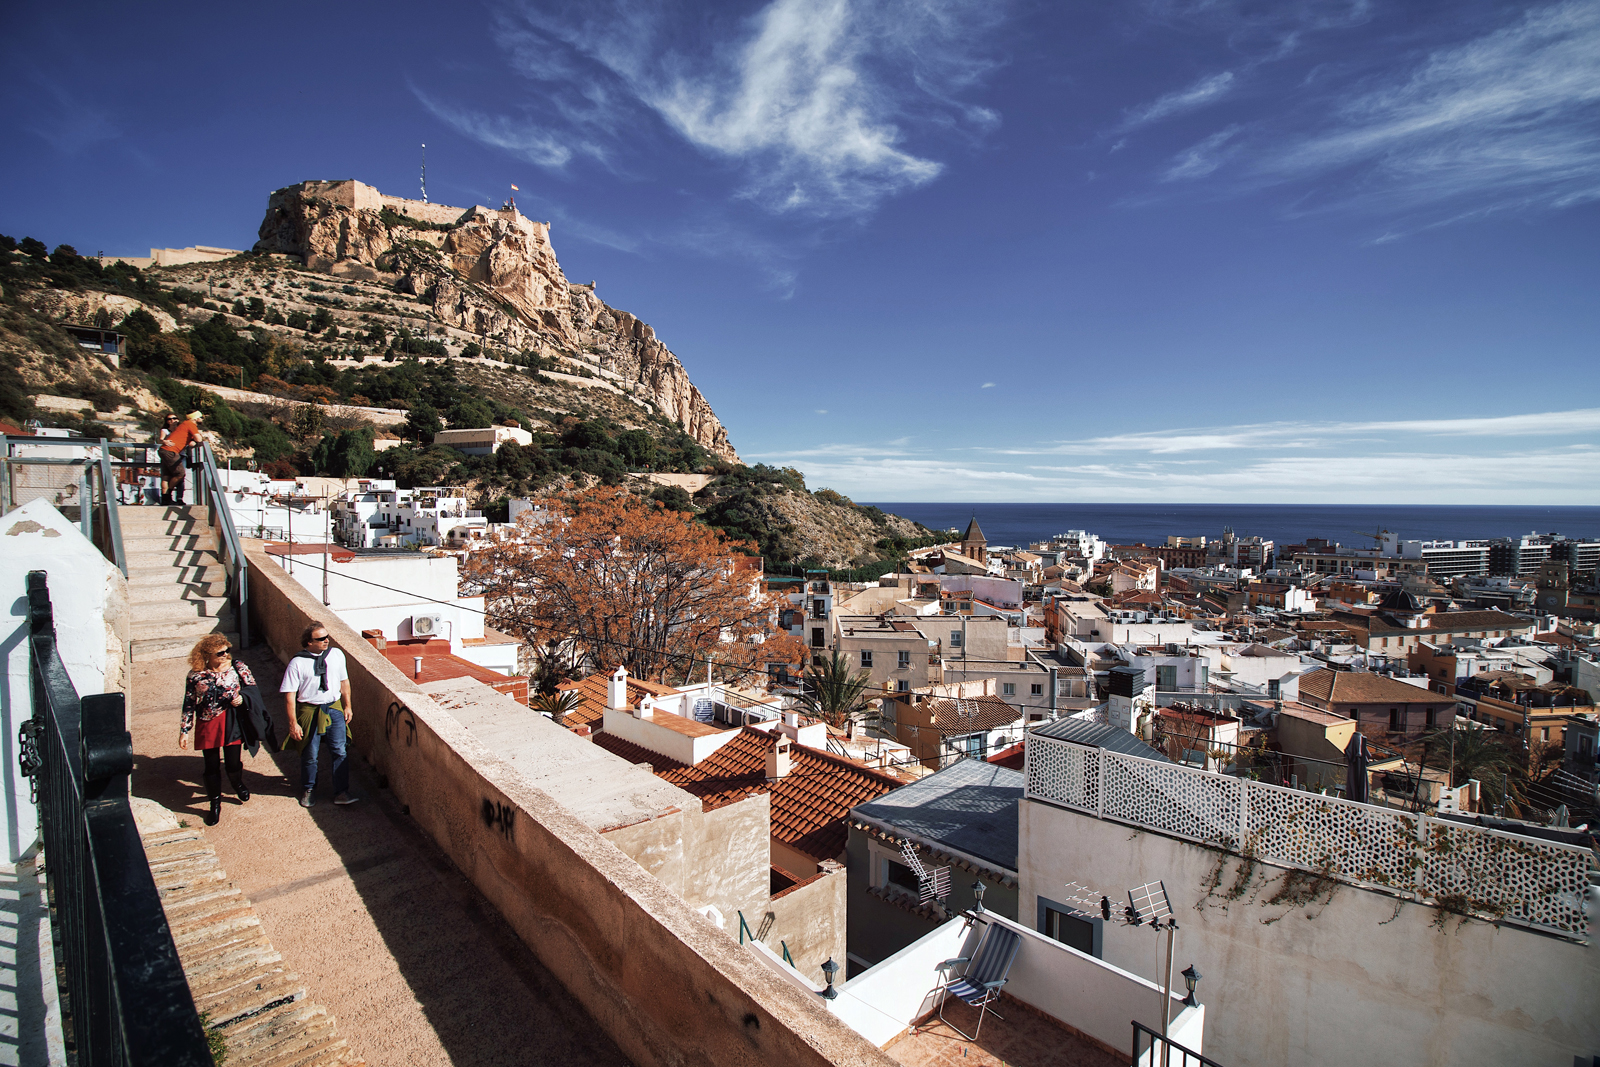 Las vistas del Barrio de Santa Cruz, con las casitas, el mar y el Castillo de Santa Bárbara, es una de las cosas más lindas que hay que ver en Alicante.